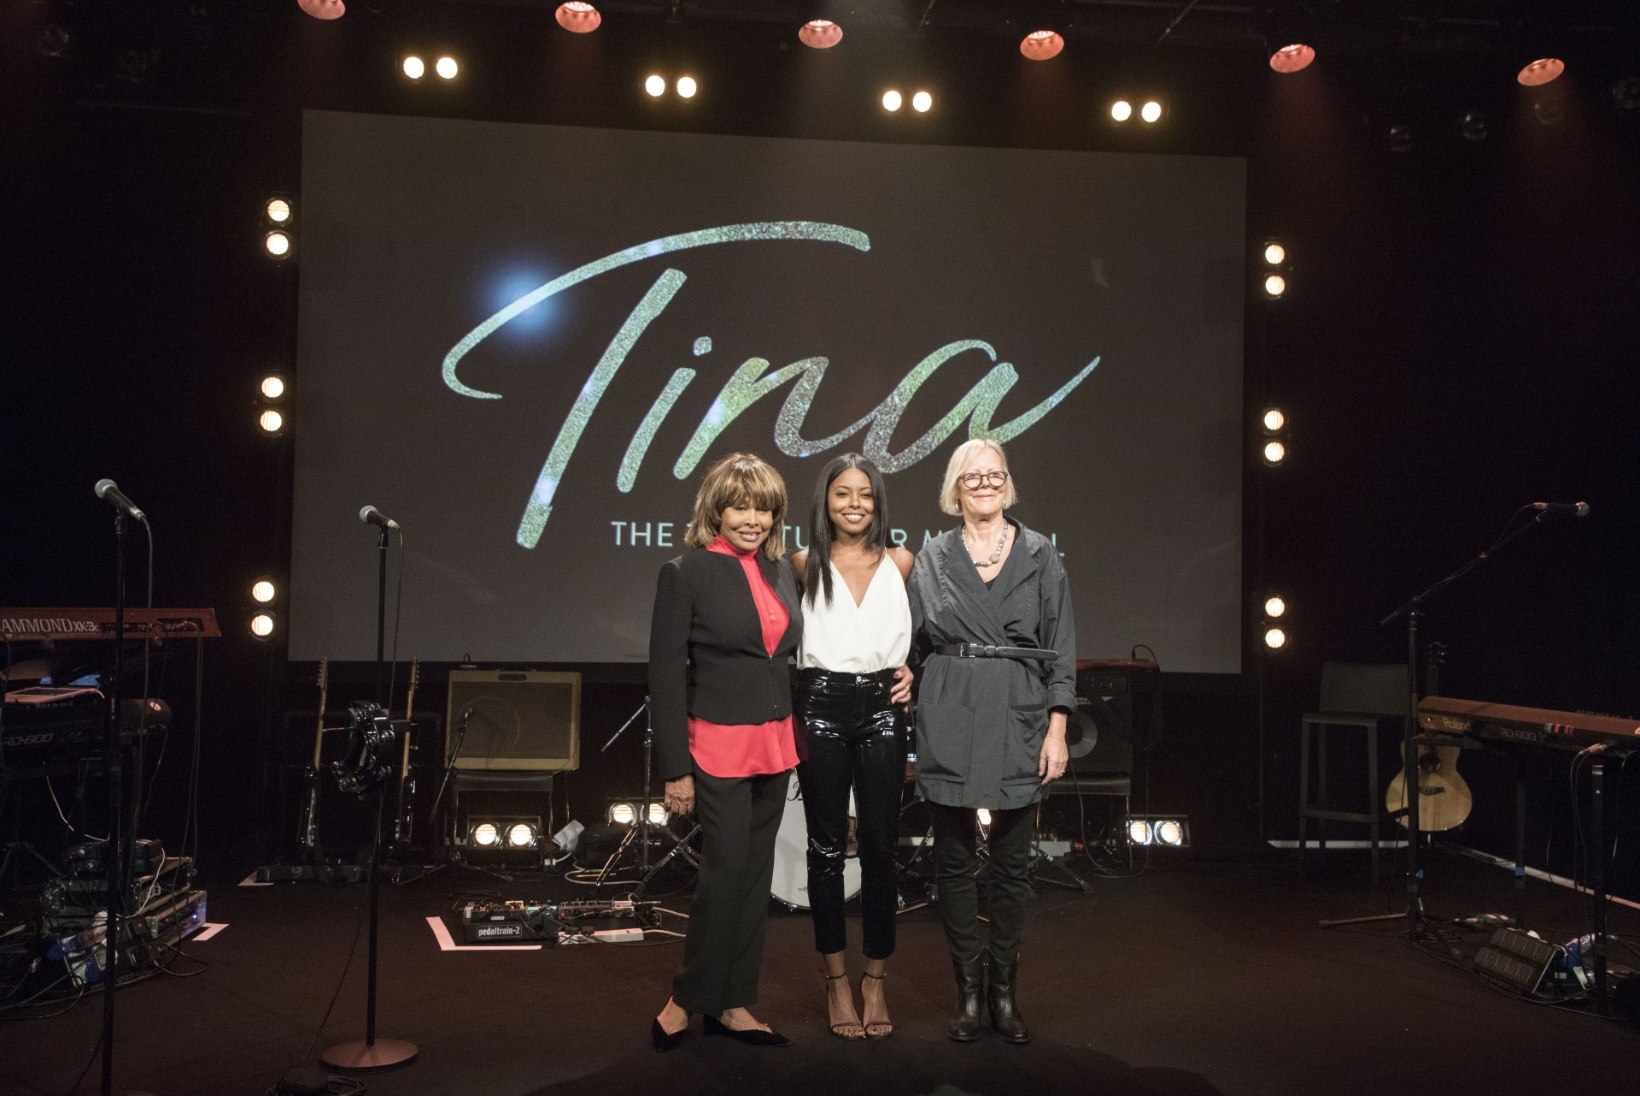 77aastane sensatsiooniliselt särav Tina Turner naasis avalikkuse ette